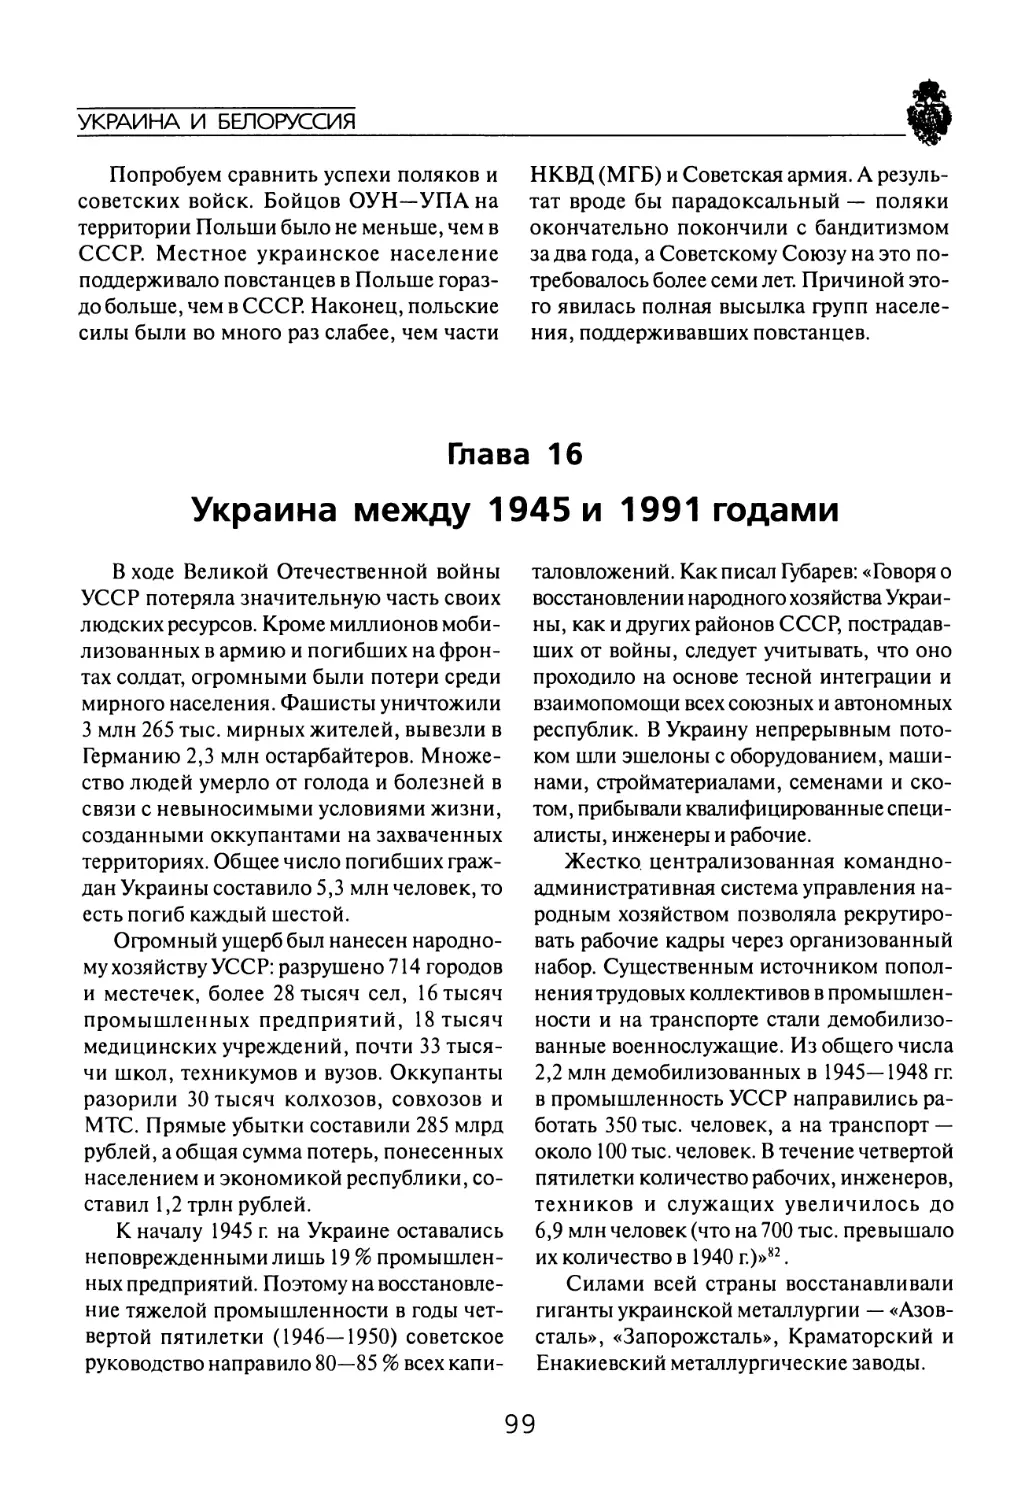 Глава  16 Украина между  1945  и  1991  годами